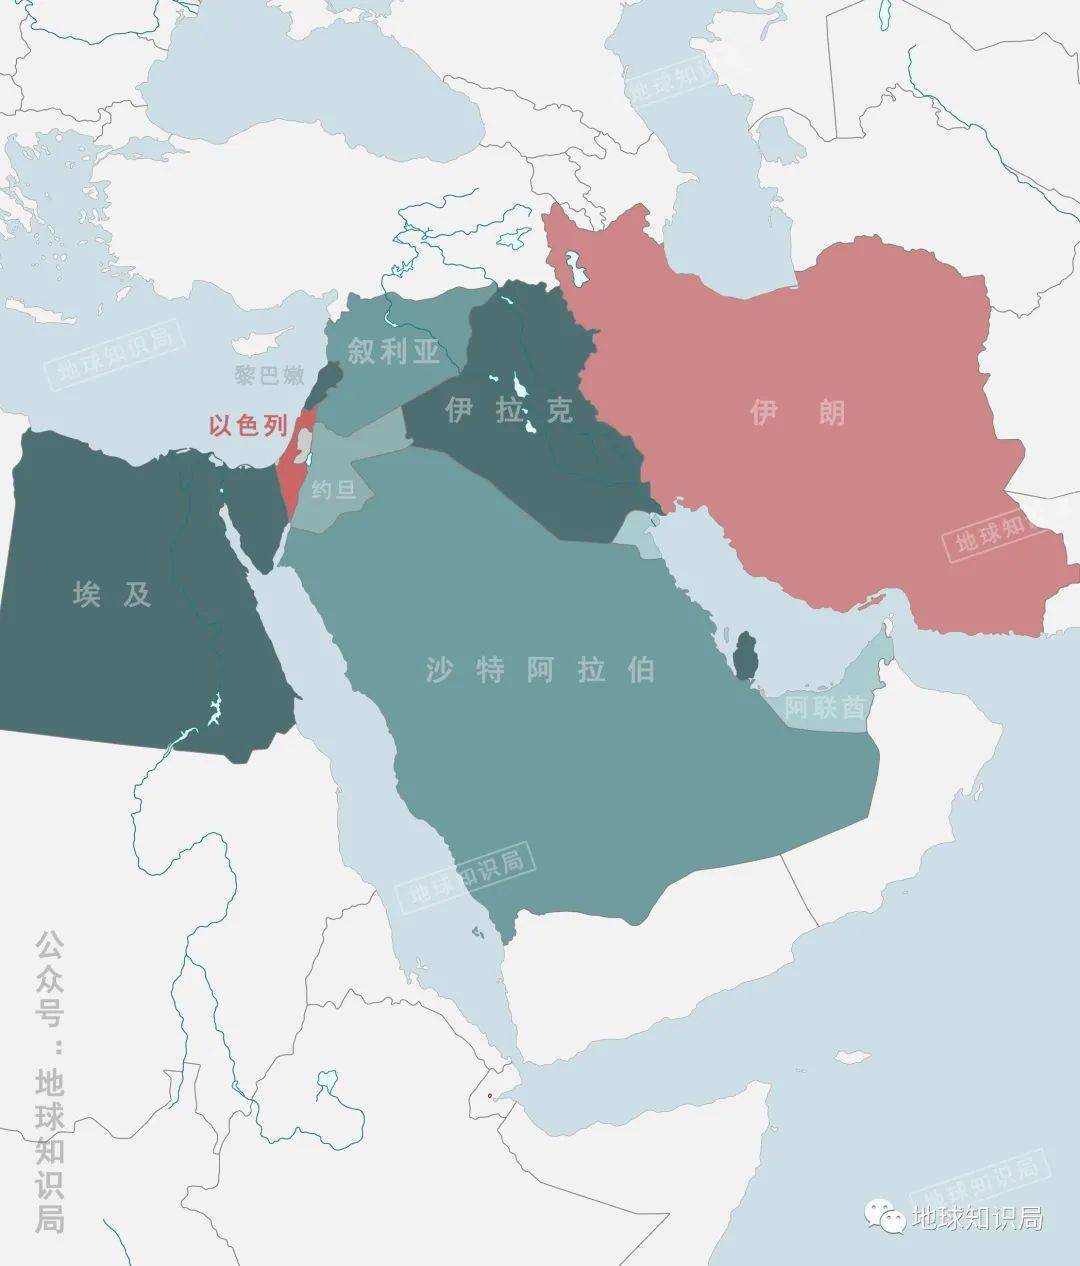 中东局势有变,美国成最大赢家?